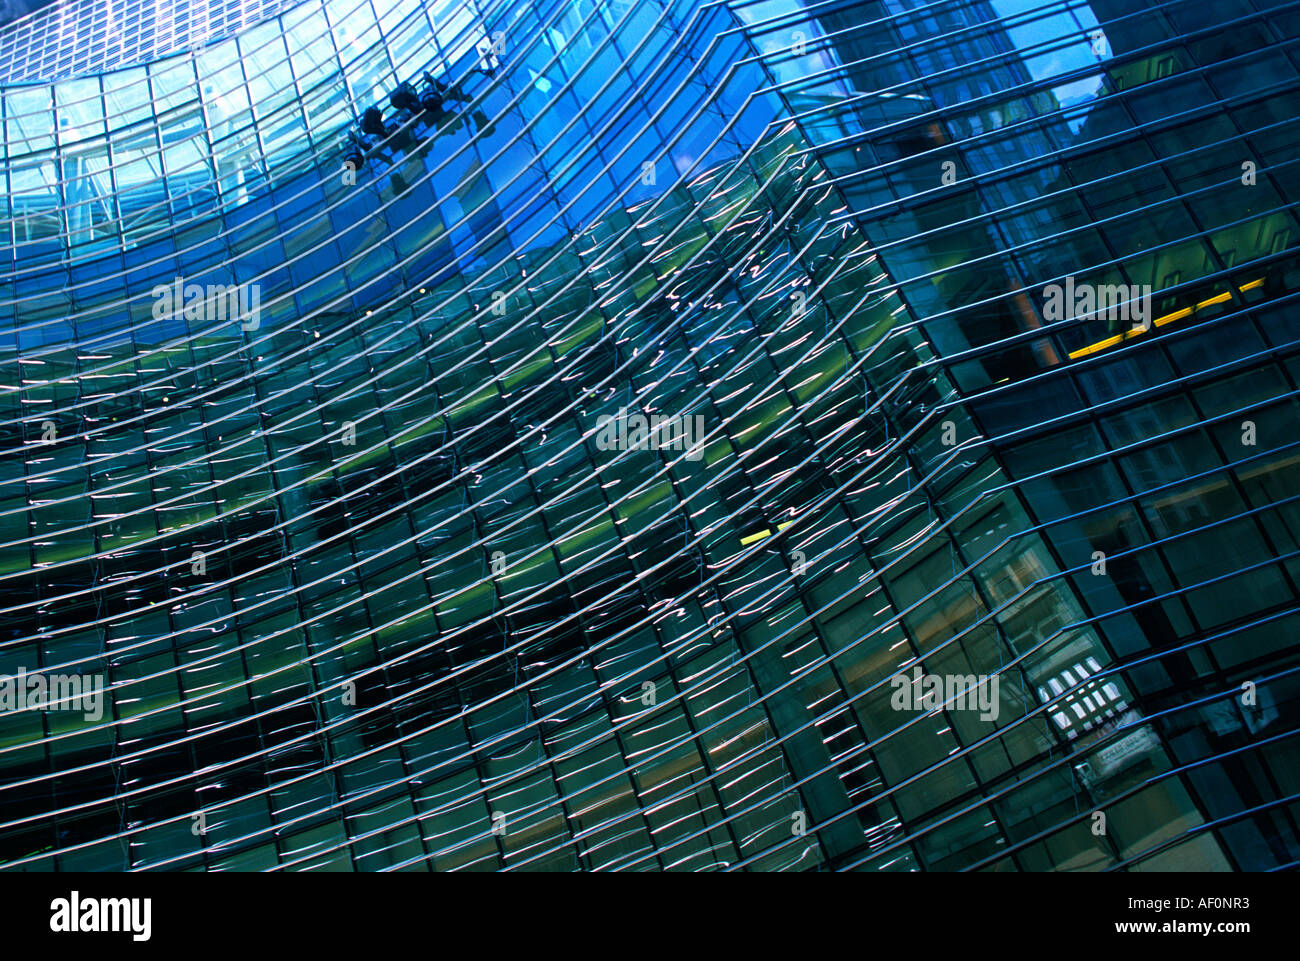 La Bloomberg Tower un bâtiment de bureau circulaire en verre. Détail de la façade du gratte-ciel à Midtown Manhattan, New York. Banque D'Images